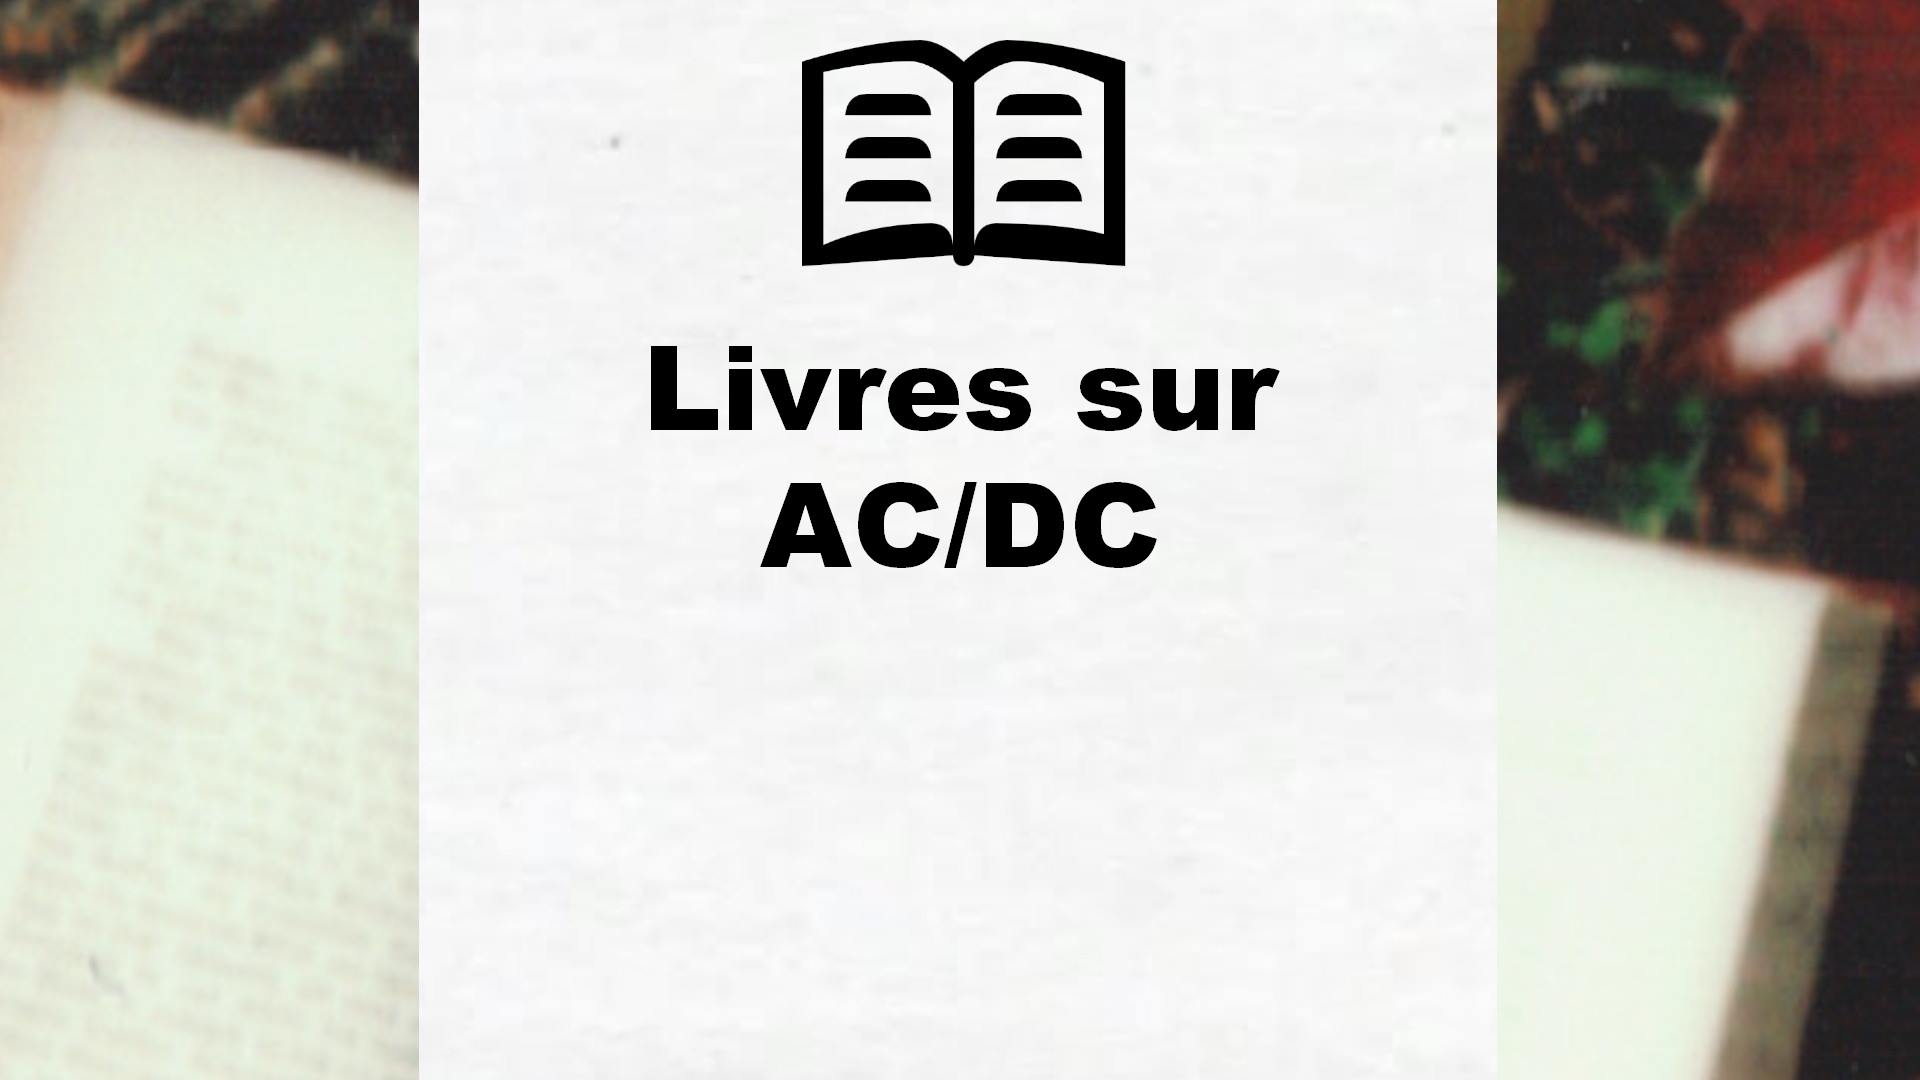 Livres sur AC/DC